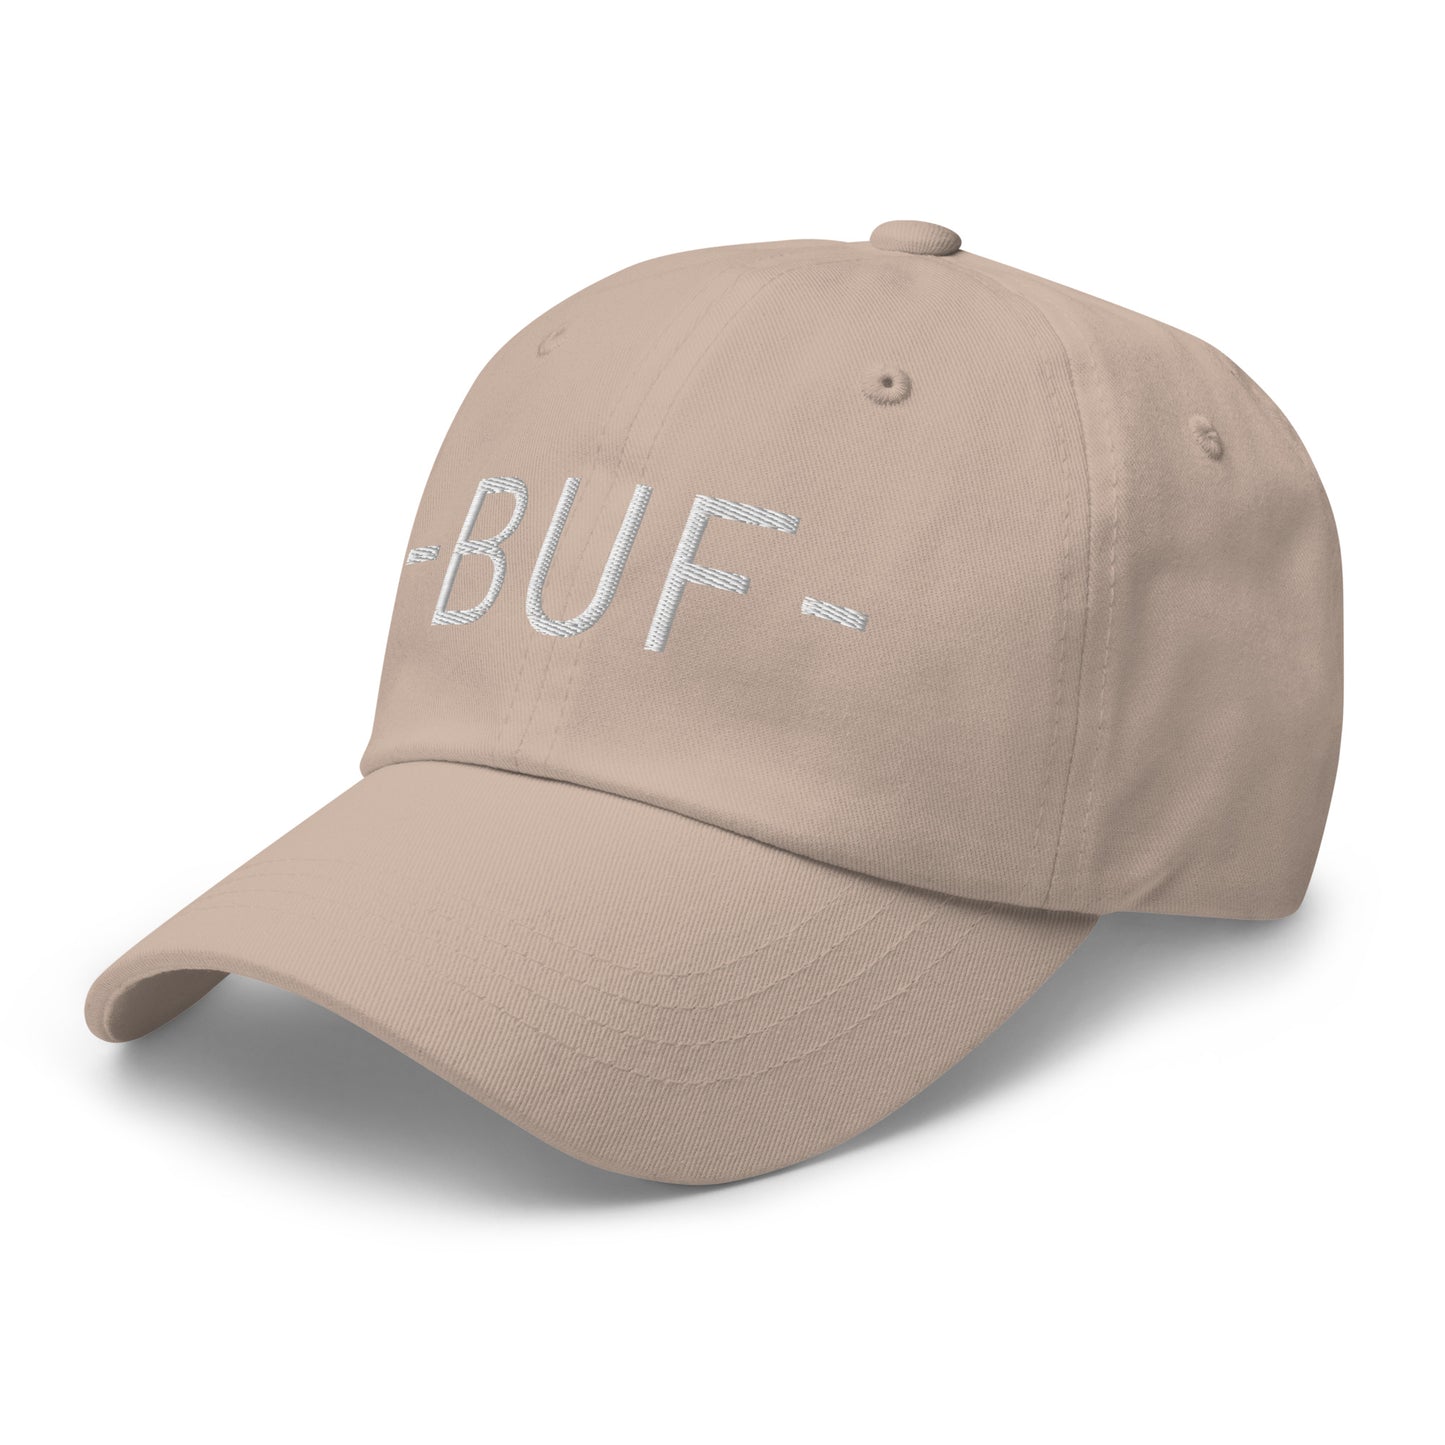 Souvenir Baseball Cap - White • BUF Buffalo • YHM Designs - Image 24